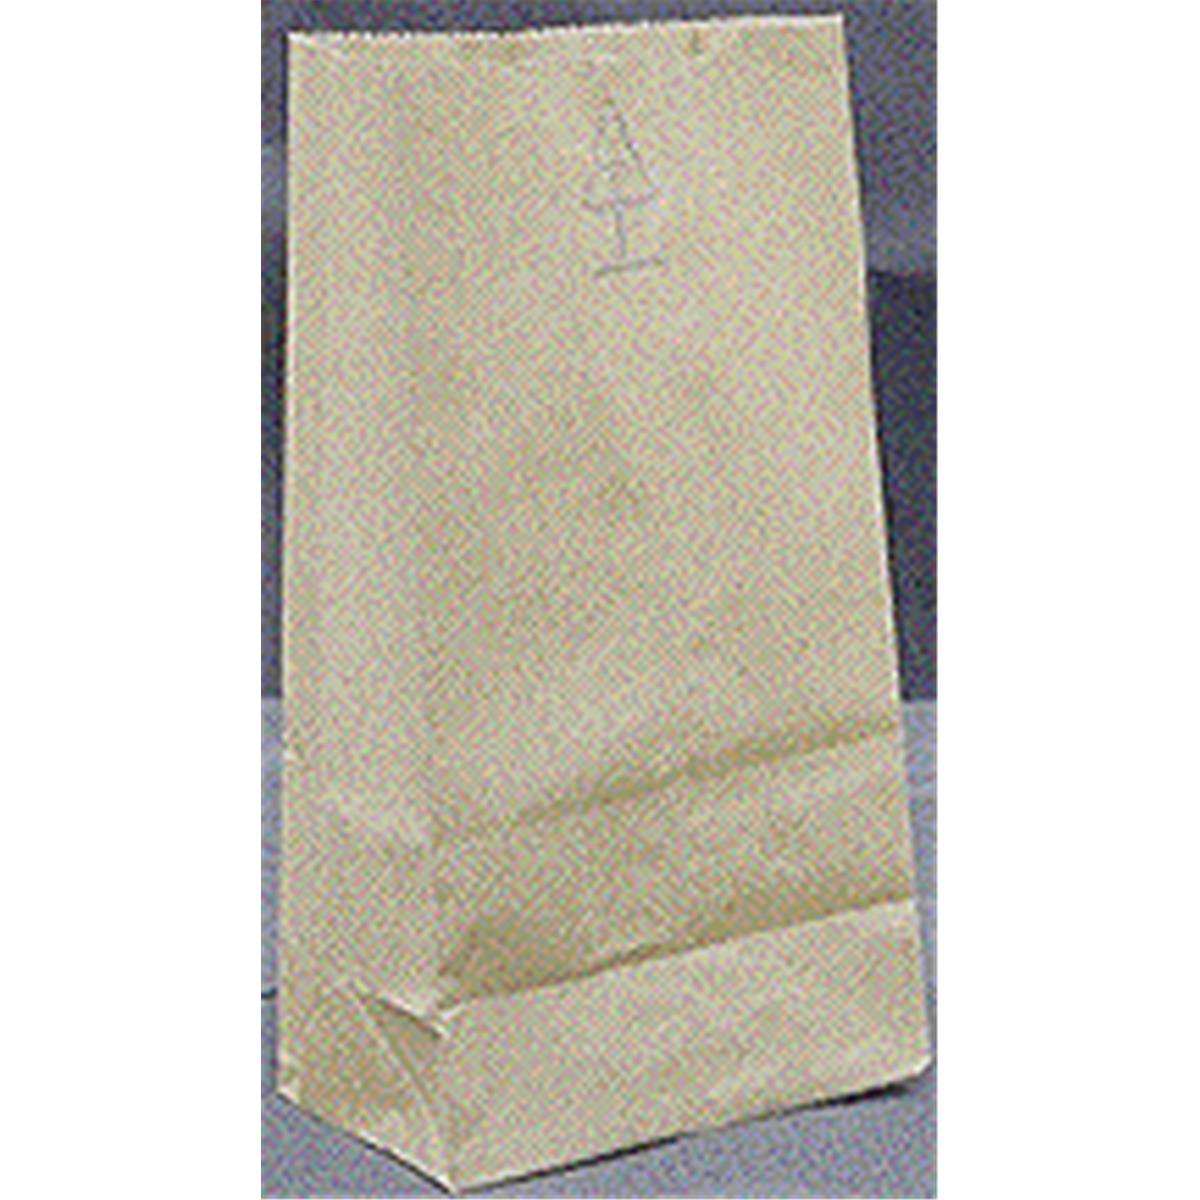 18416 16 Lbs Grocery Bags, Brown Kraft Paper - Pack Of 500